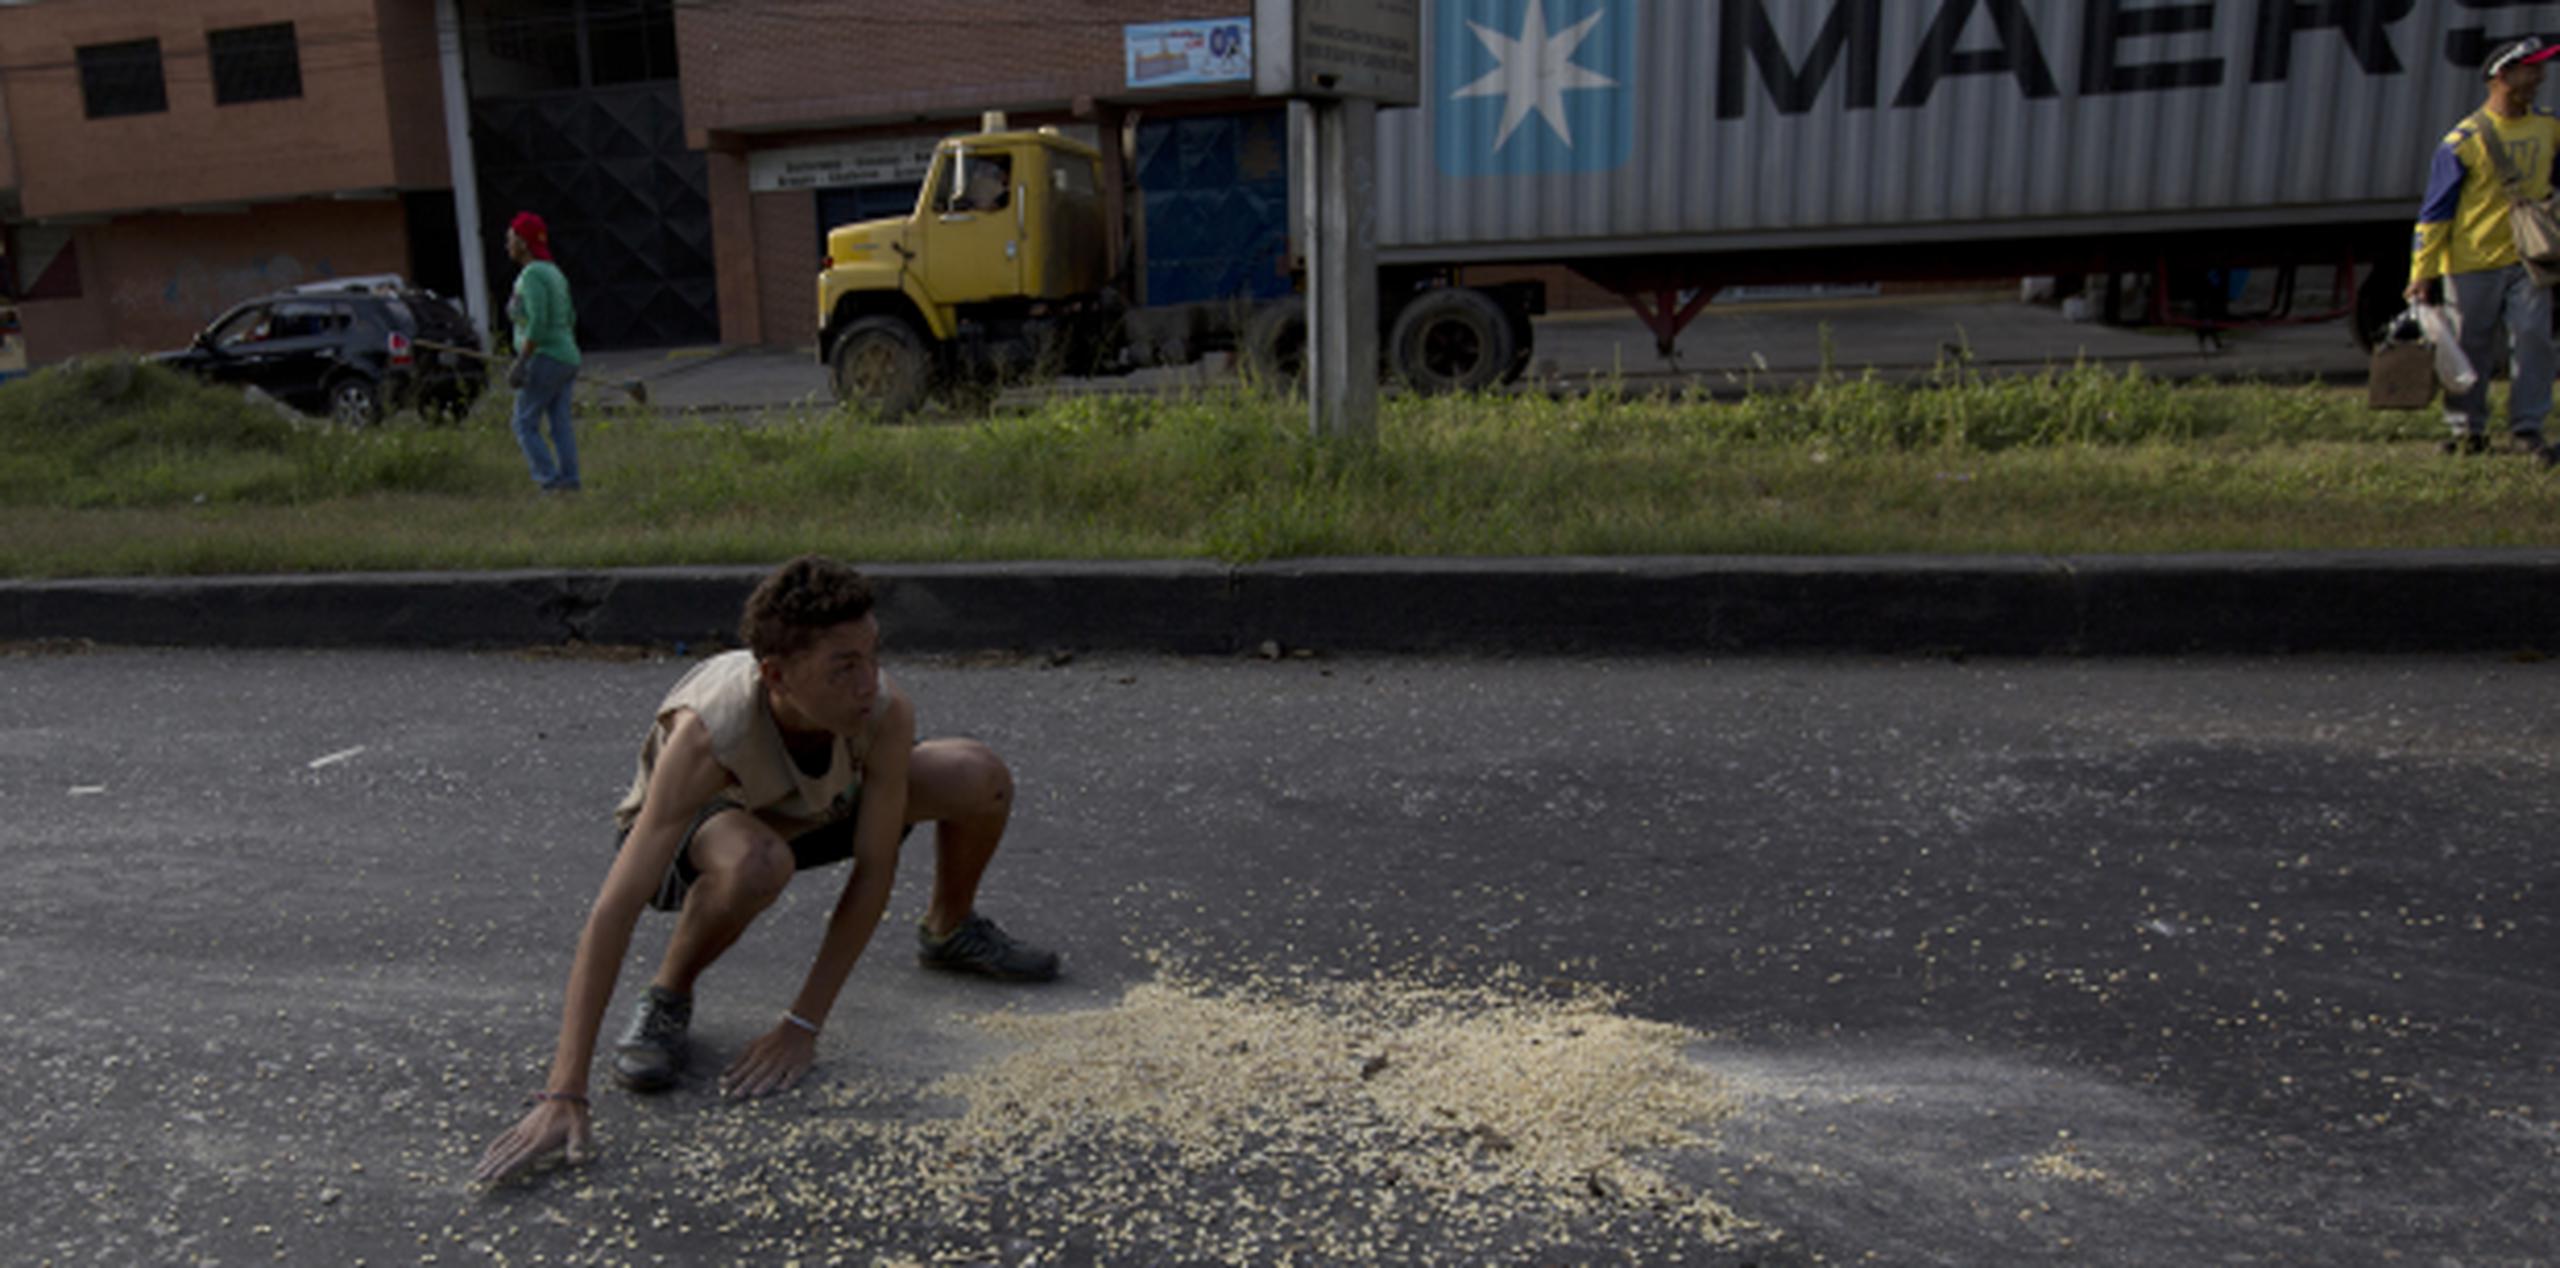 A las afueras del Puerto Cabello este jovencito recogía de la carretera unos pocos granos de maíz que se habían caído de un furgón. (AP)